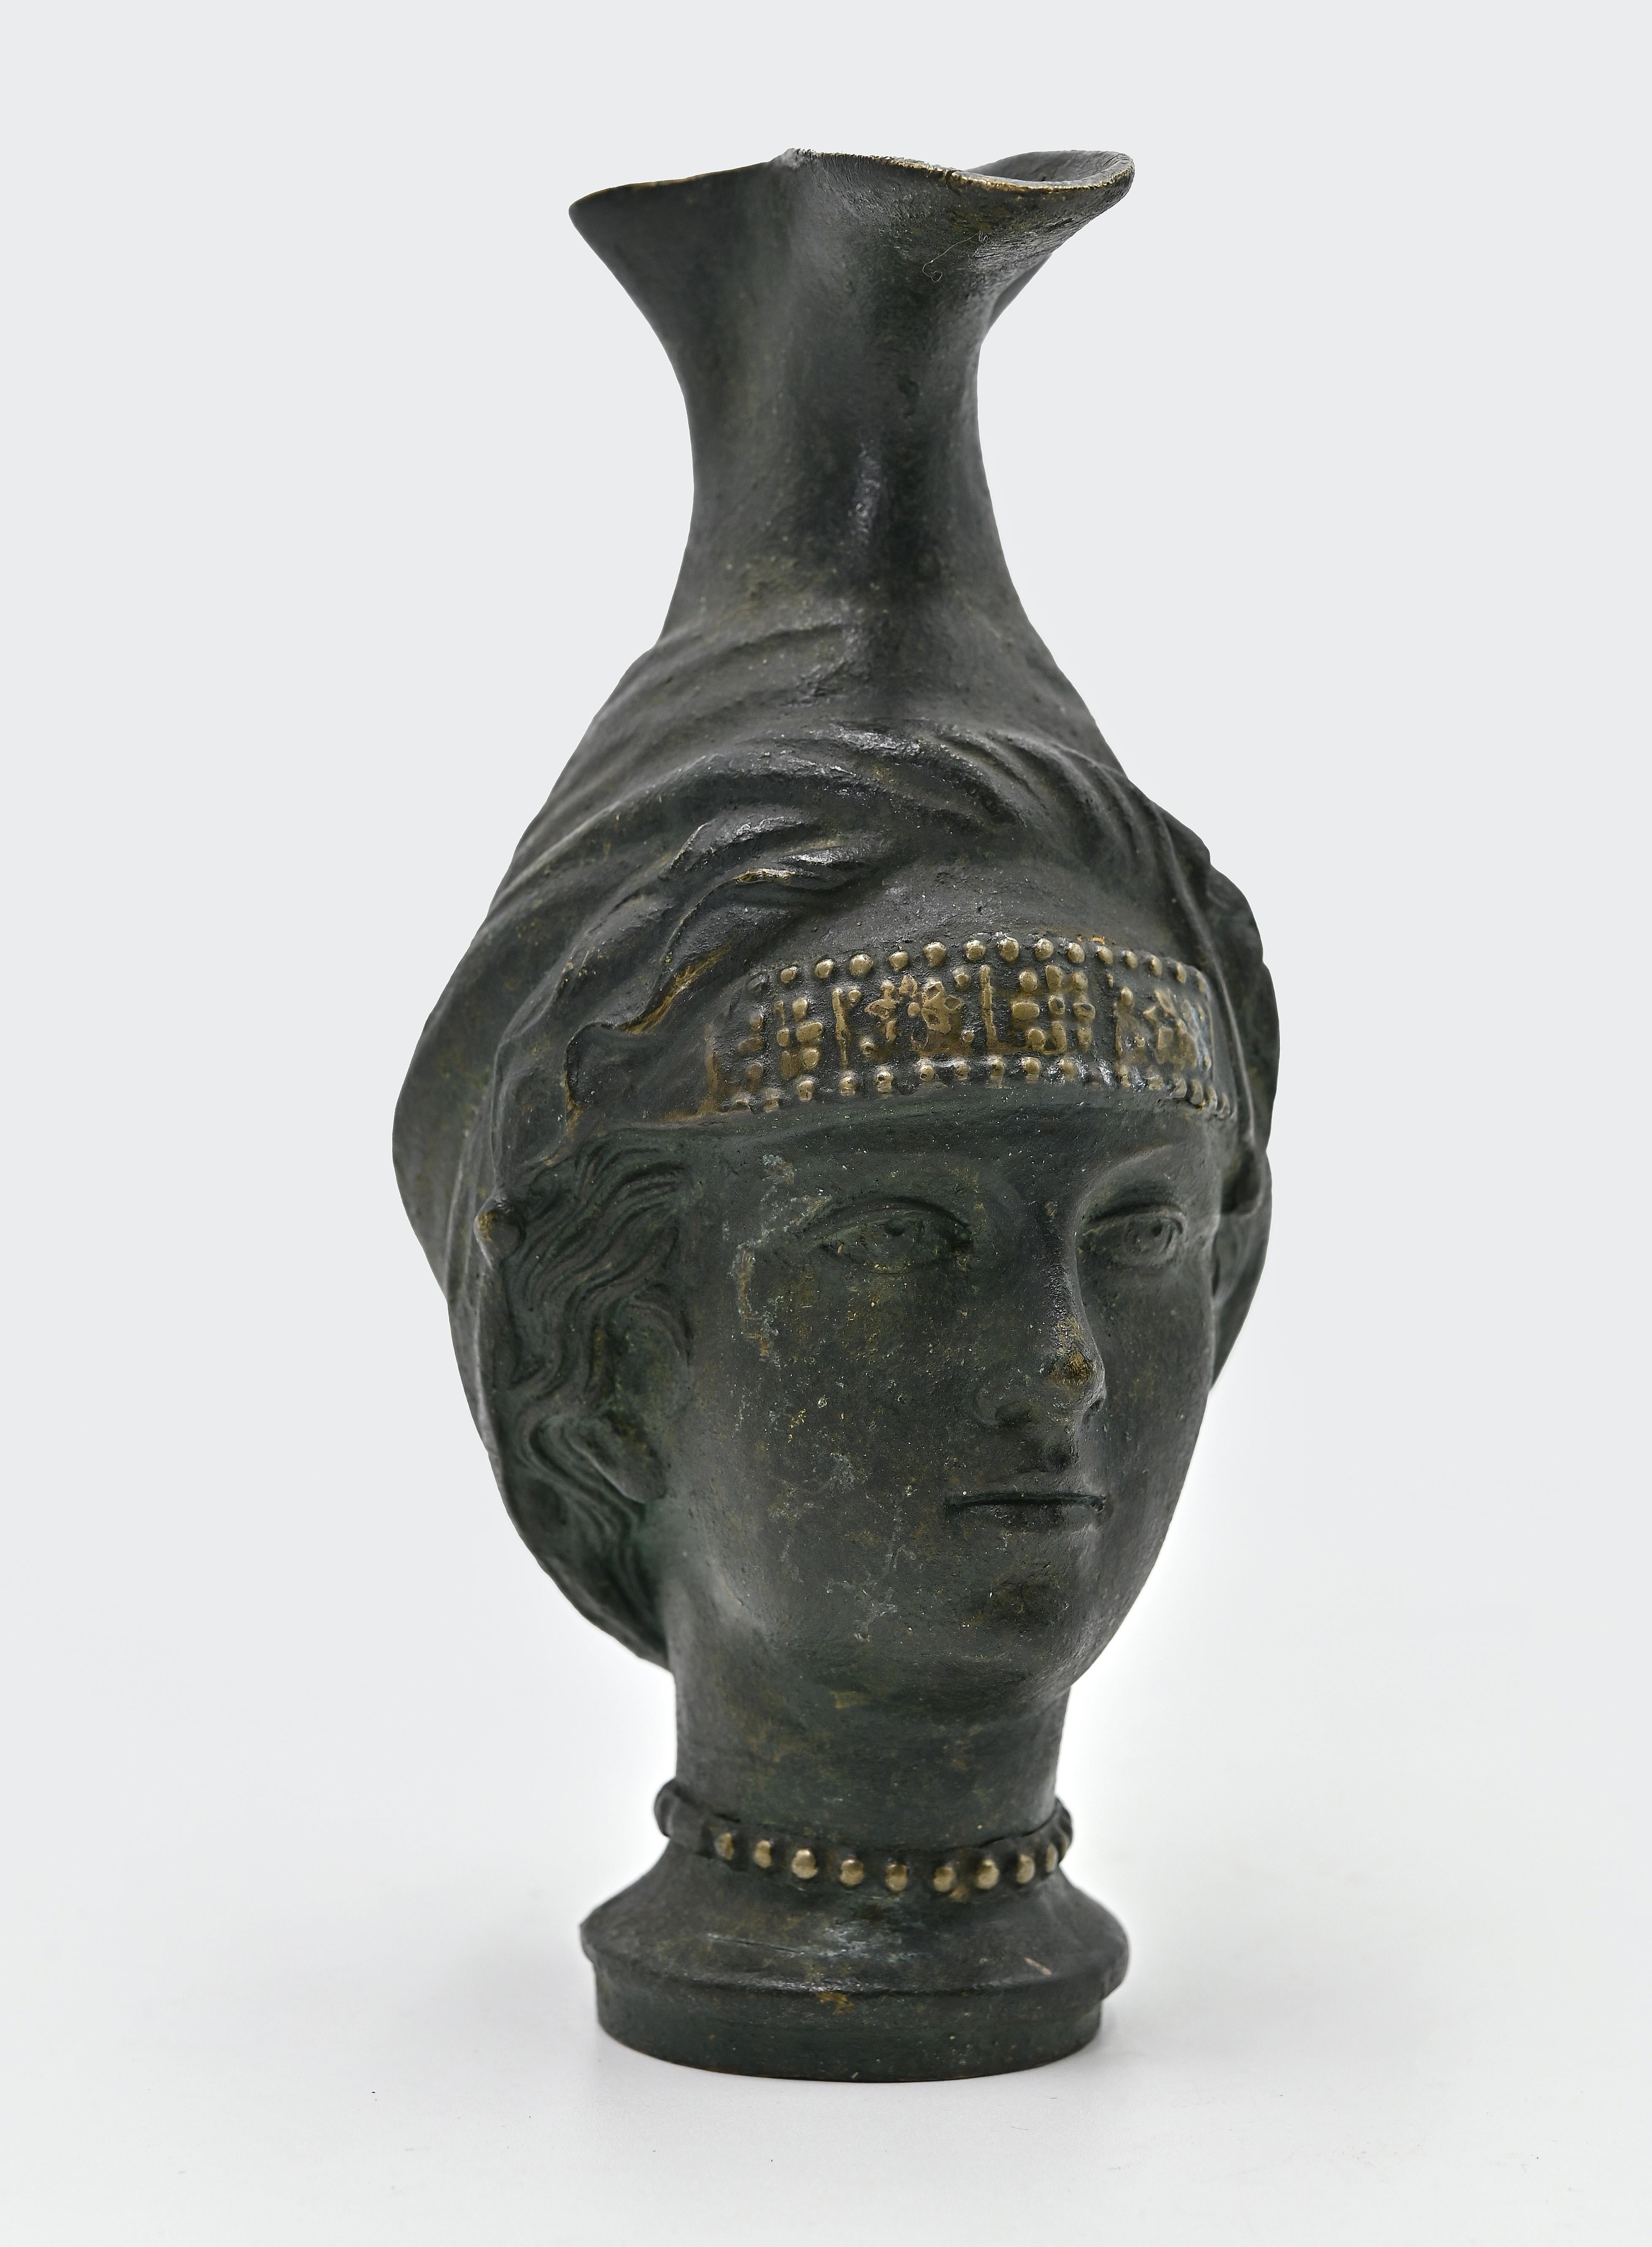 La jarra de bronce es un objeto original realizado por un artista anónimo a principios del siglo XX.

Jarra realizada a la manera antigua, con forma de cabeza femenina, con pico y base redonda.

Fundición de bronce con verdigris. 

¡No te